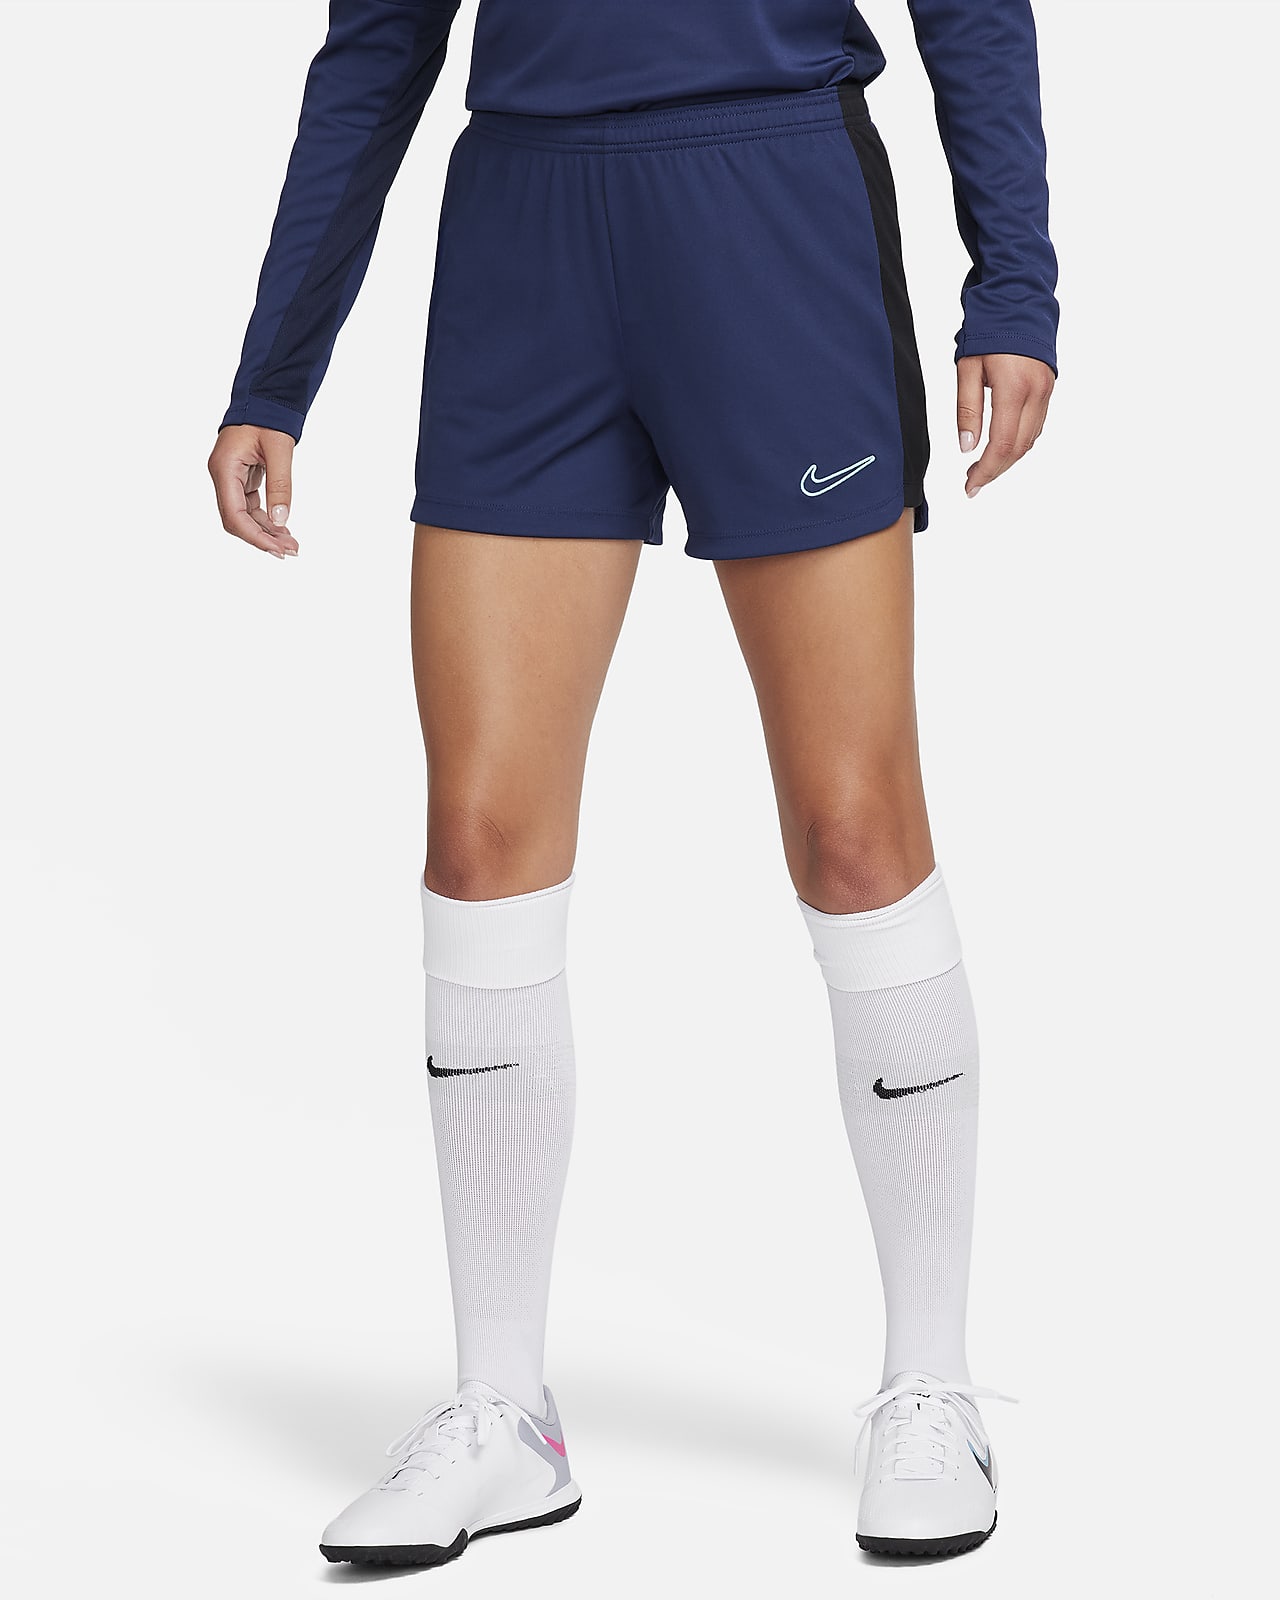 Women's Shorts. Nike DK